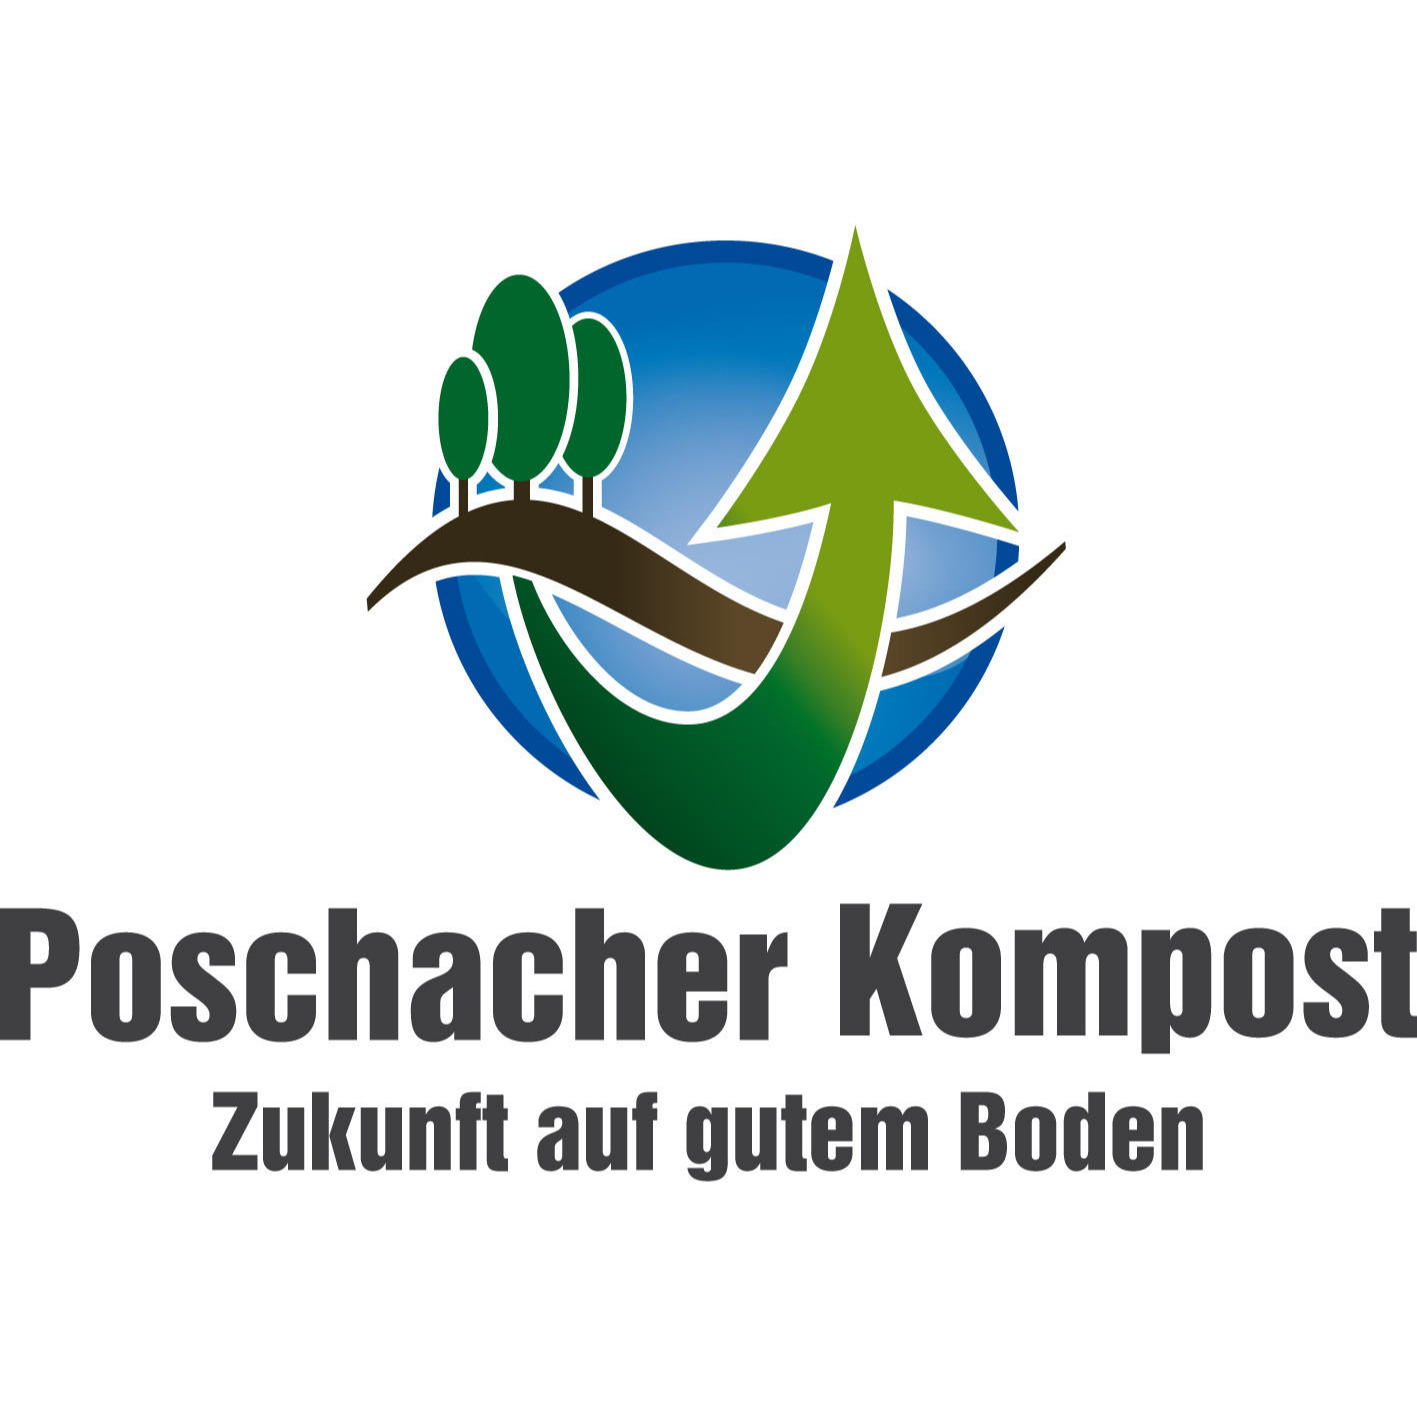 Poschacher Kompost e.U. Logo